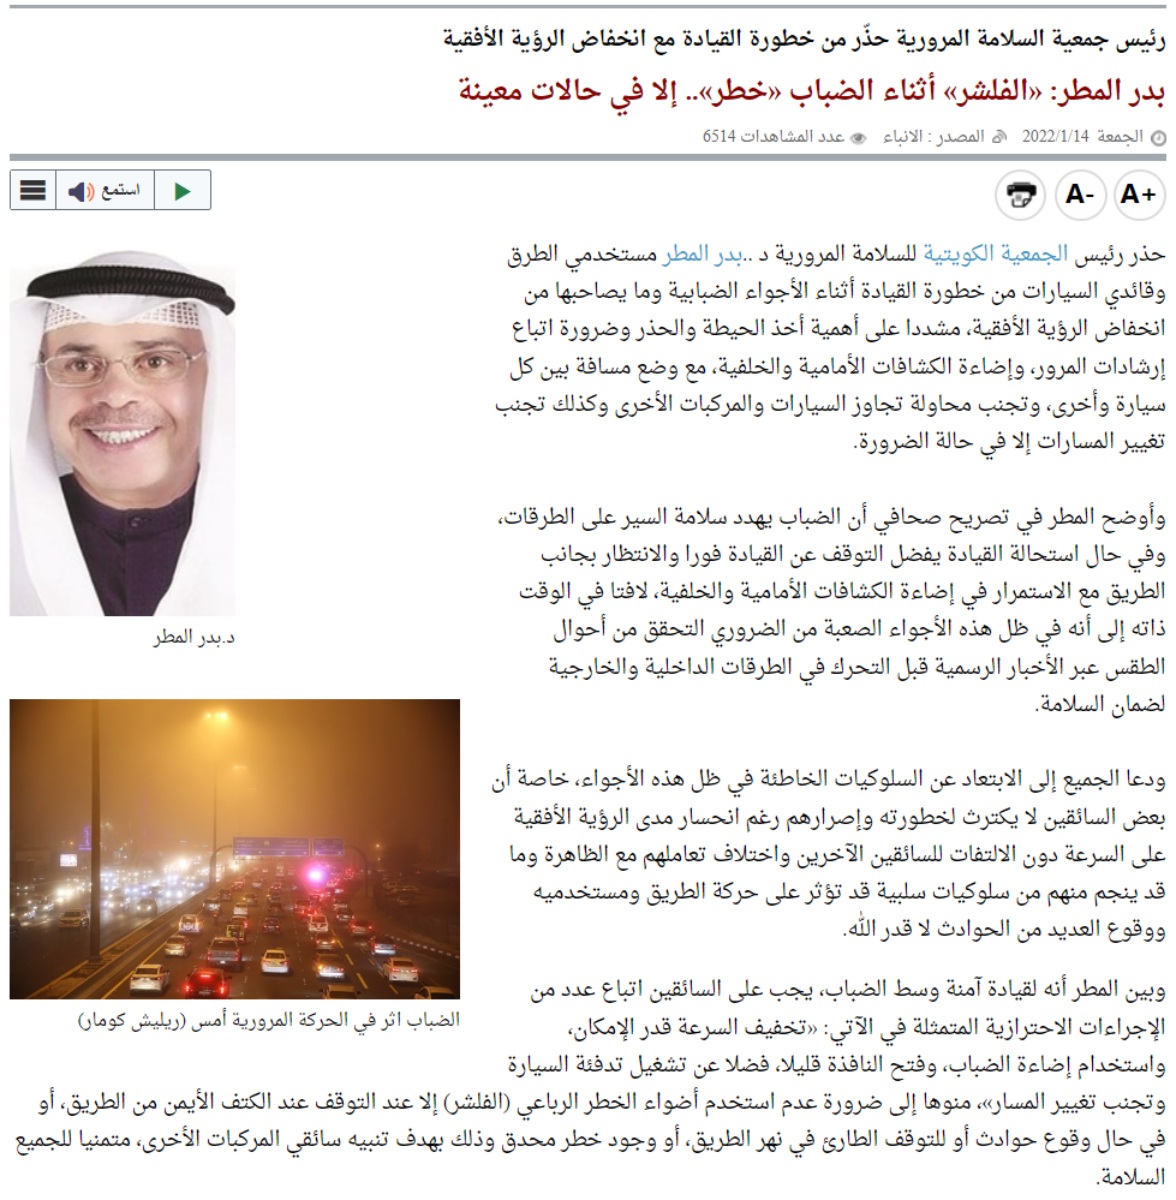 لماذا المرور السعودي يسمح باستخدام الأضواء التحذيرية “فلشر” بينما في بقية الدول العربية ودول العالم تعتبر مخالفة؟ 5